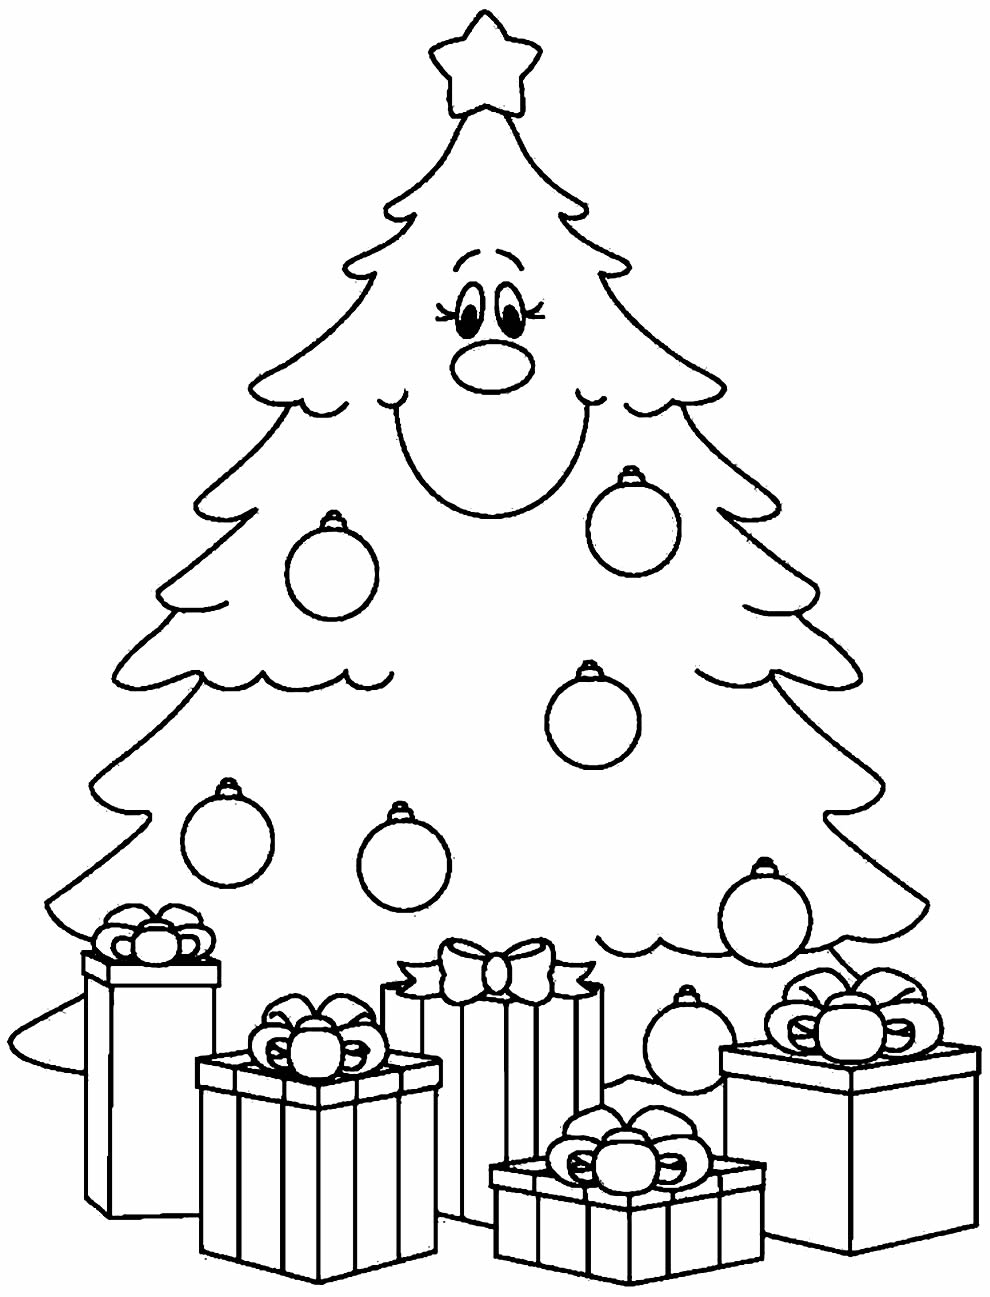 Desenho de Árvore de Natal para imprimir e colorir